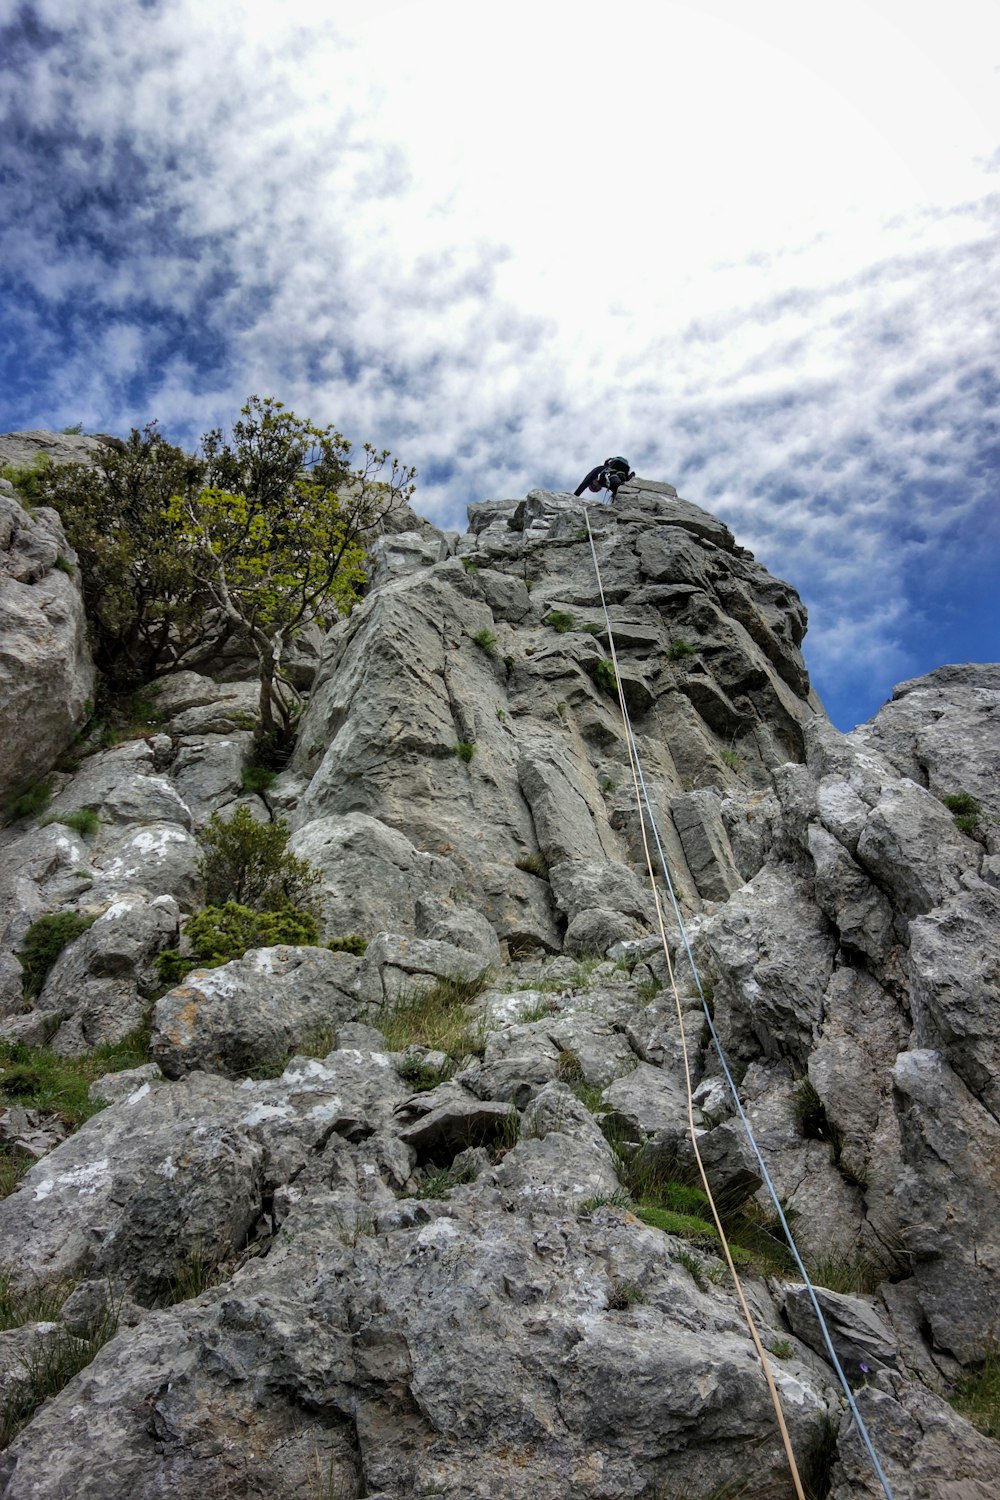 a person climbing a rocky mountain